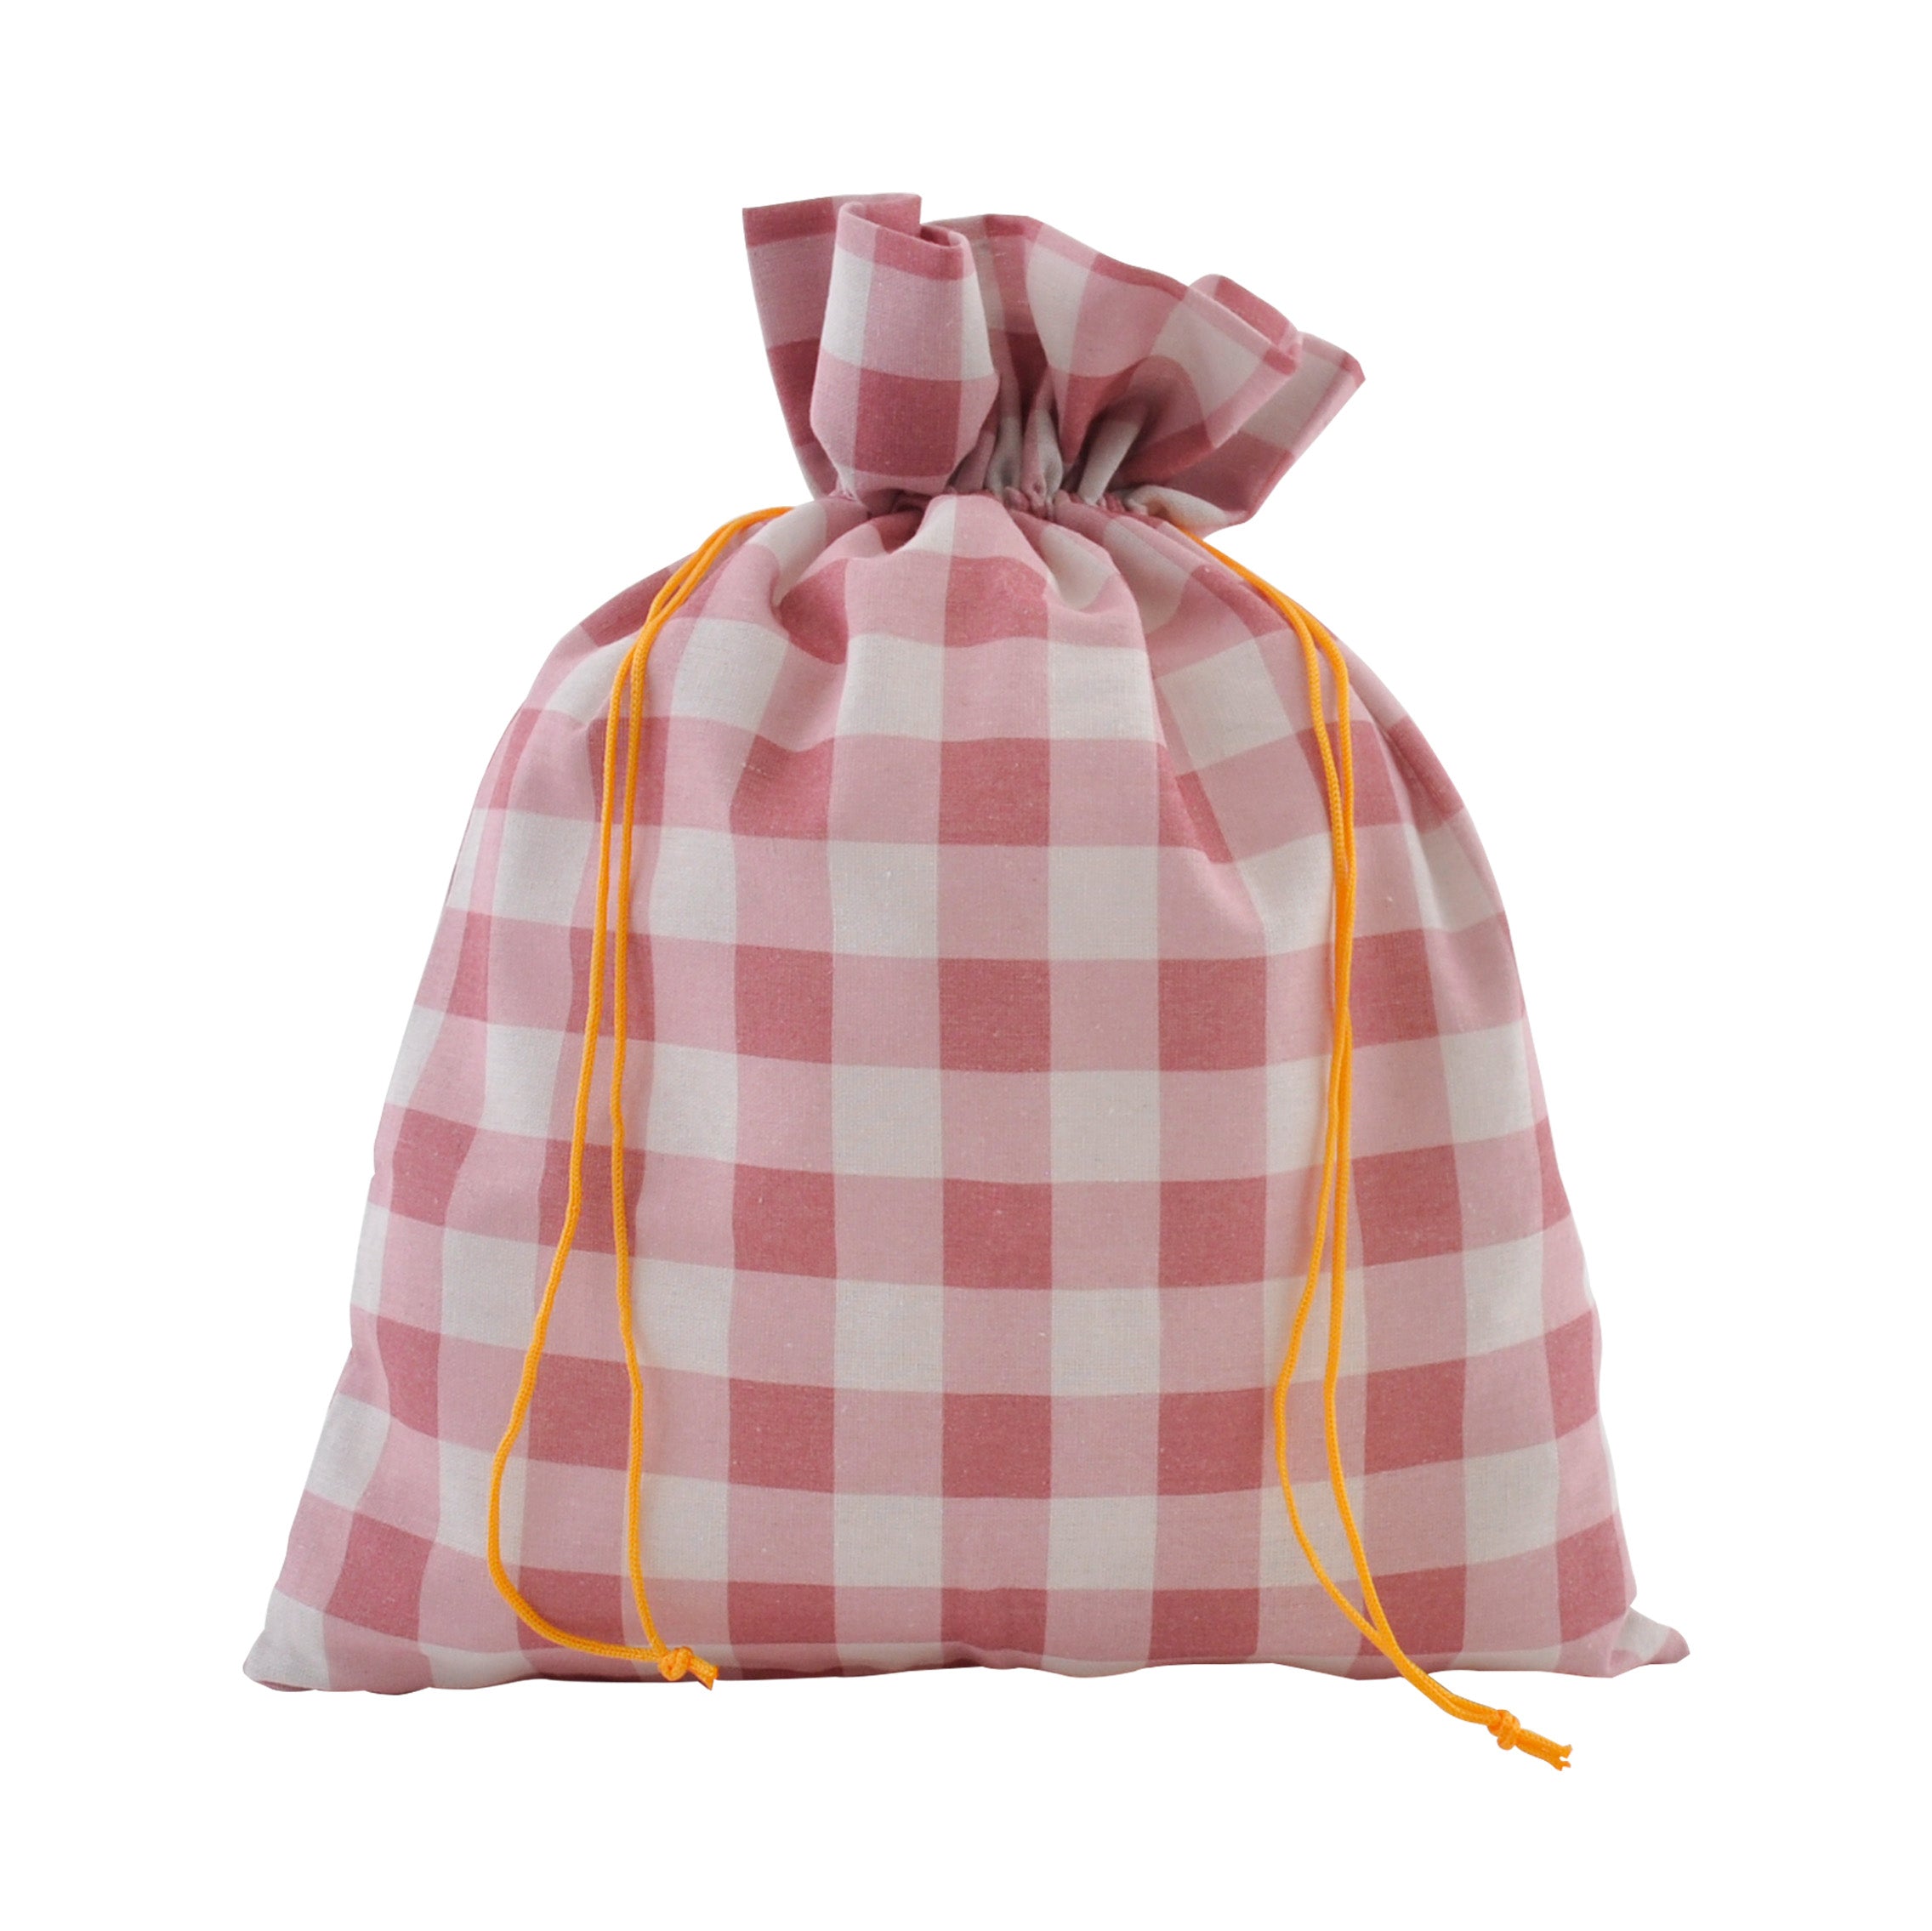 Christmas 23 Lge Fabric Gift Bag - Cherry Gingham